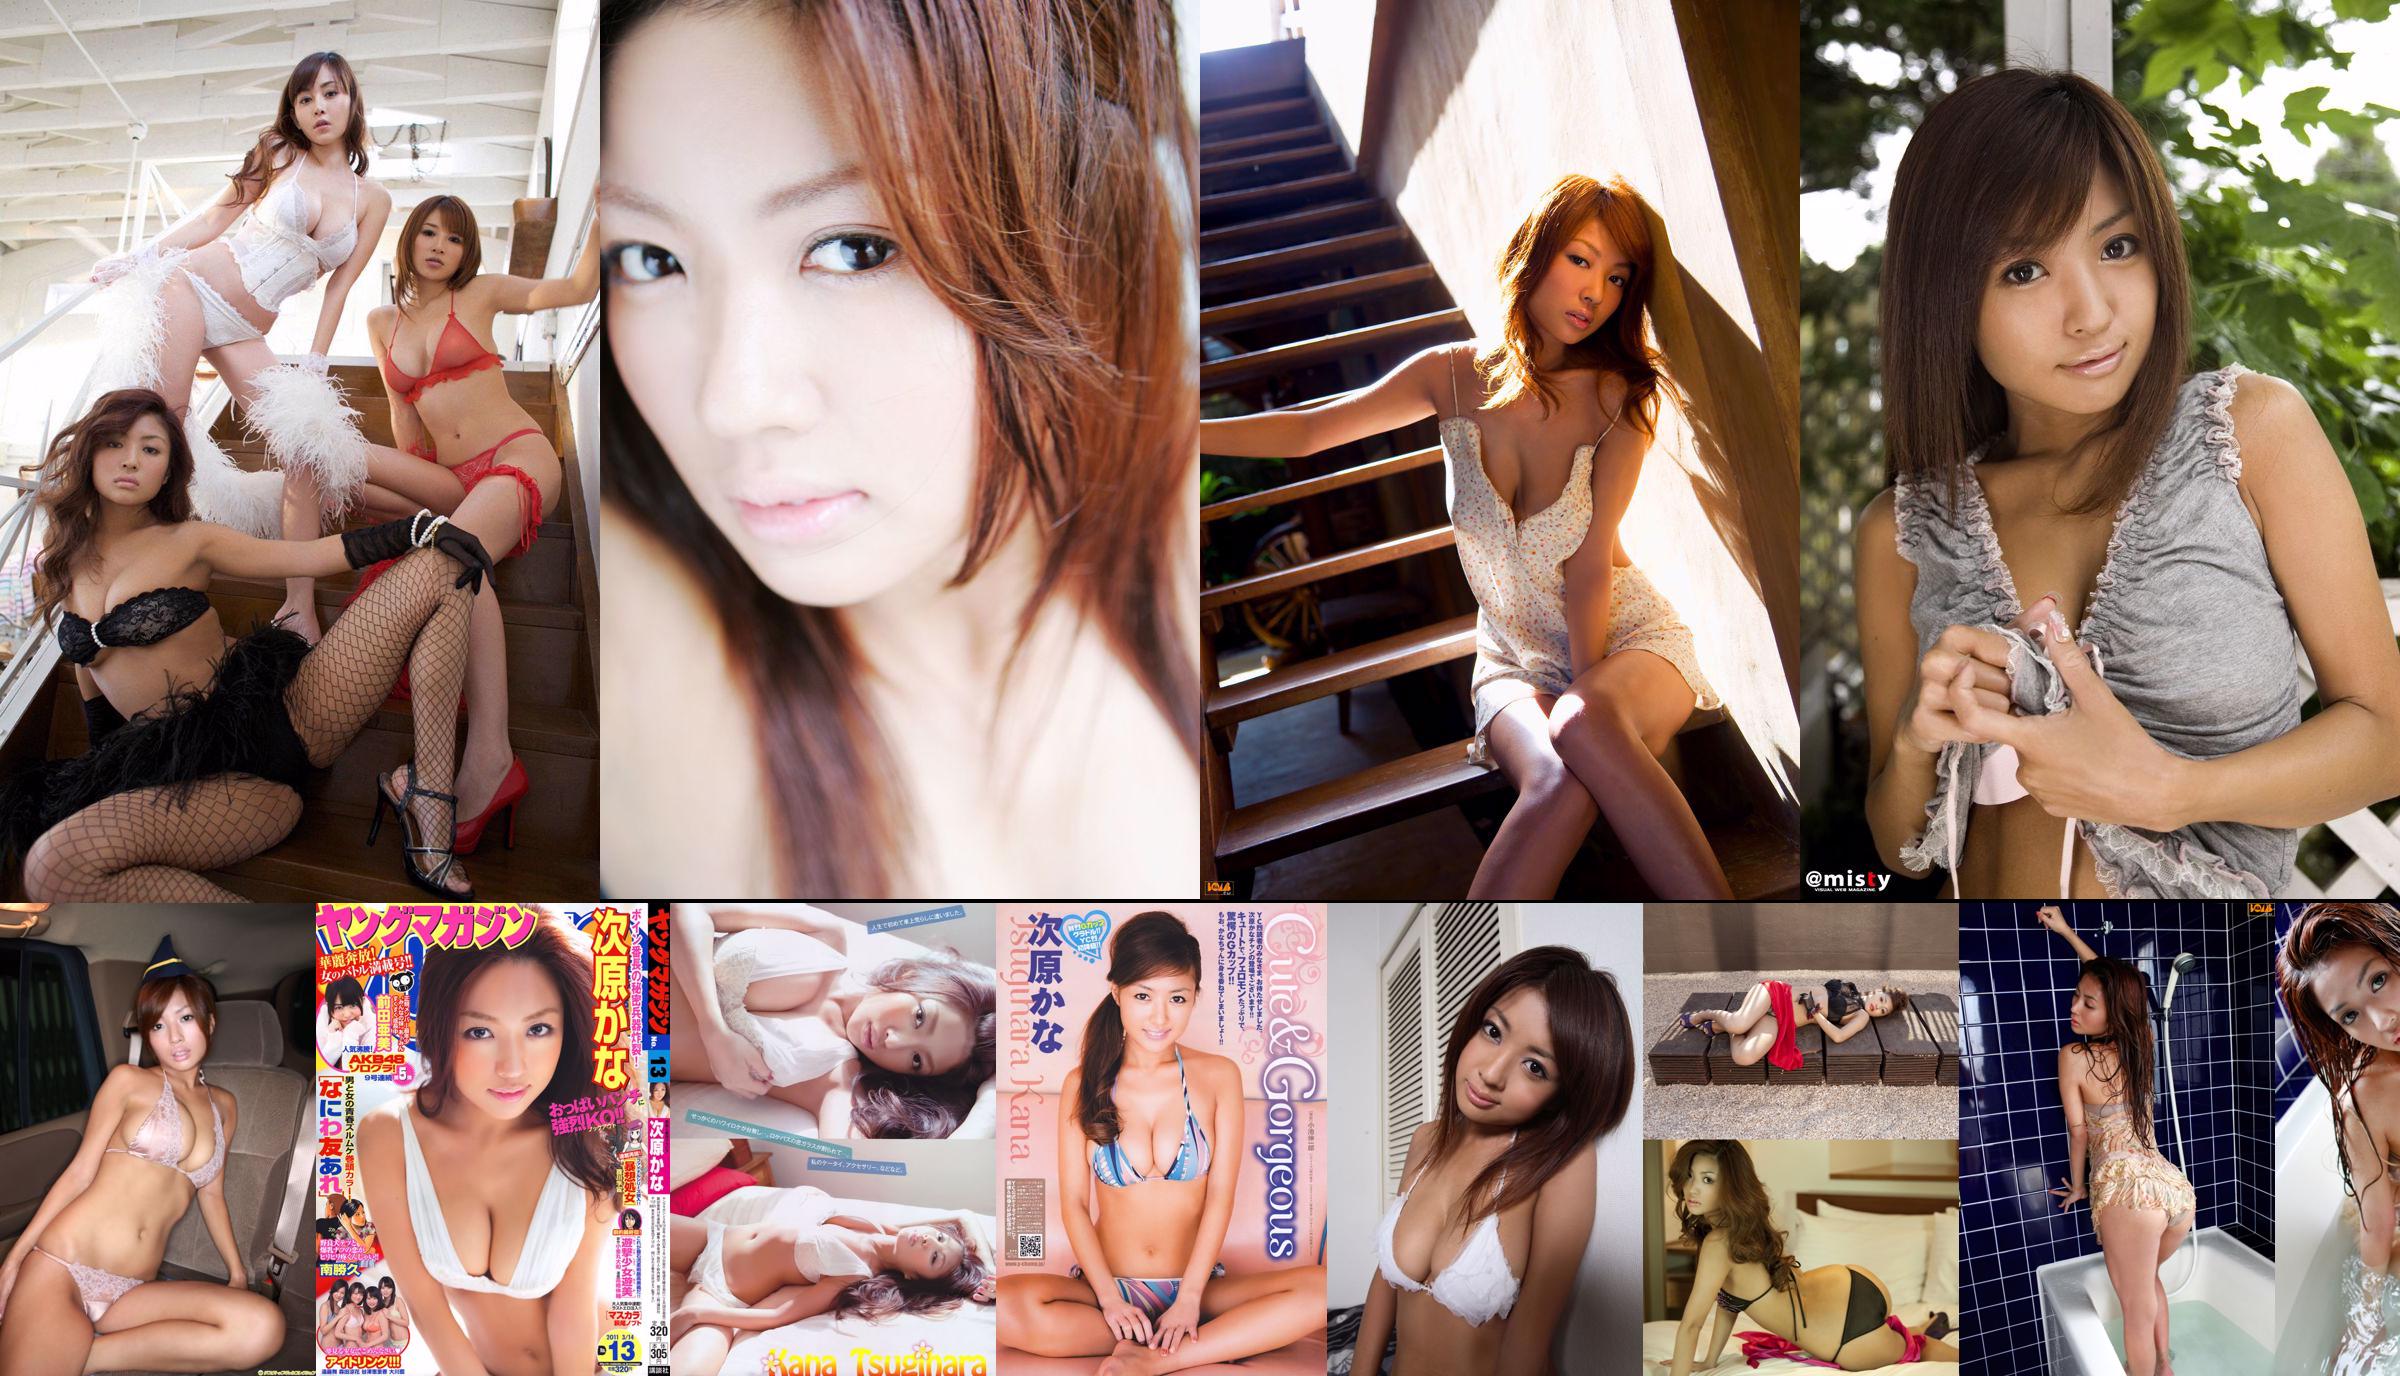 [Girlz-High] Koharu Nishino Koharu Nishino - Lace Girl - bkoh_009_001 No.0a850c Page 3